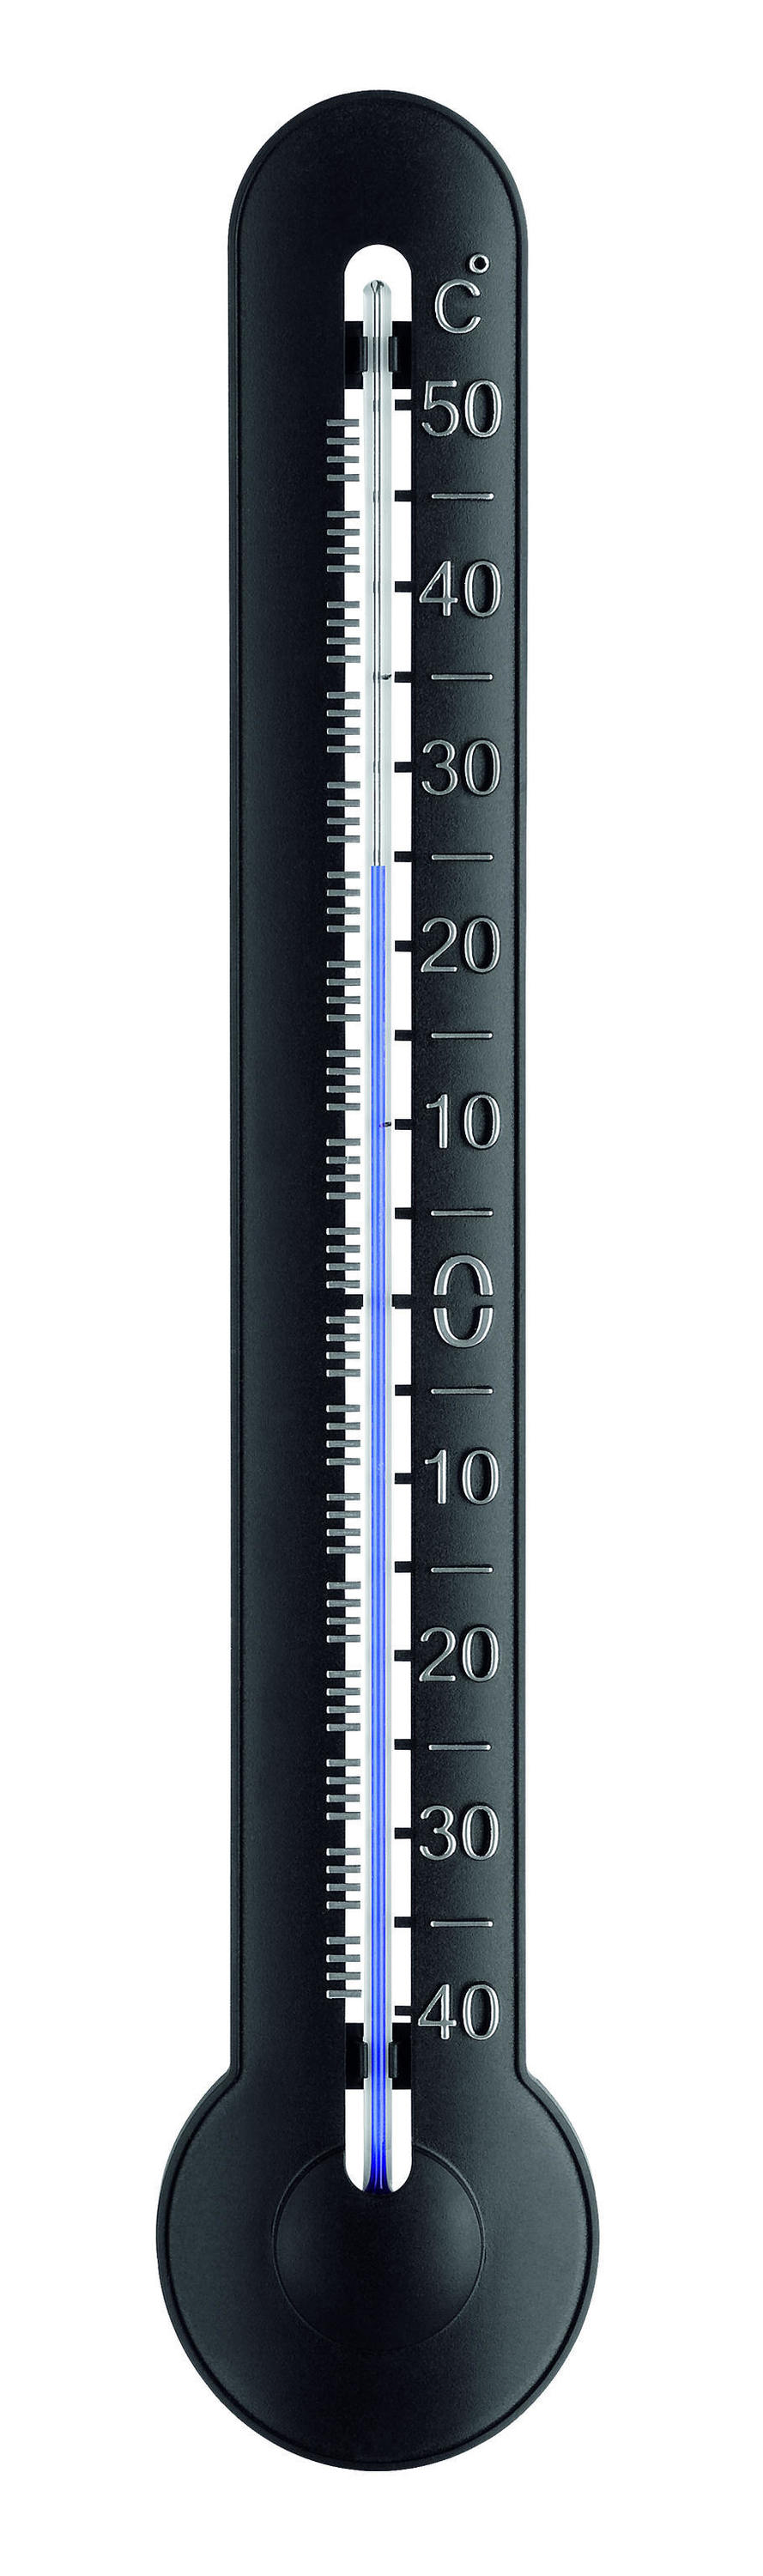 Termómetro para exterior TFA 14.6000.01 - Termómetros, Analógicos - La Casa  del Clima